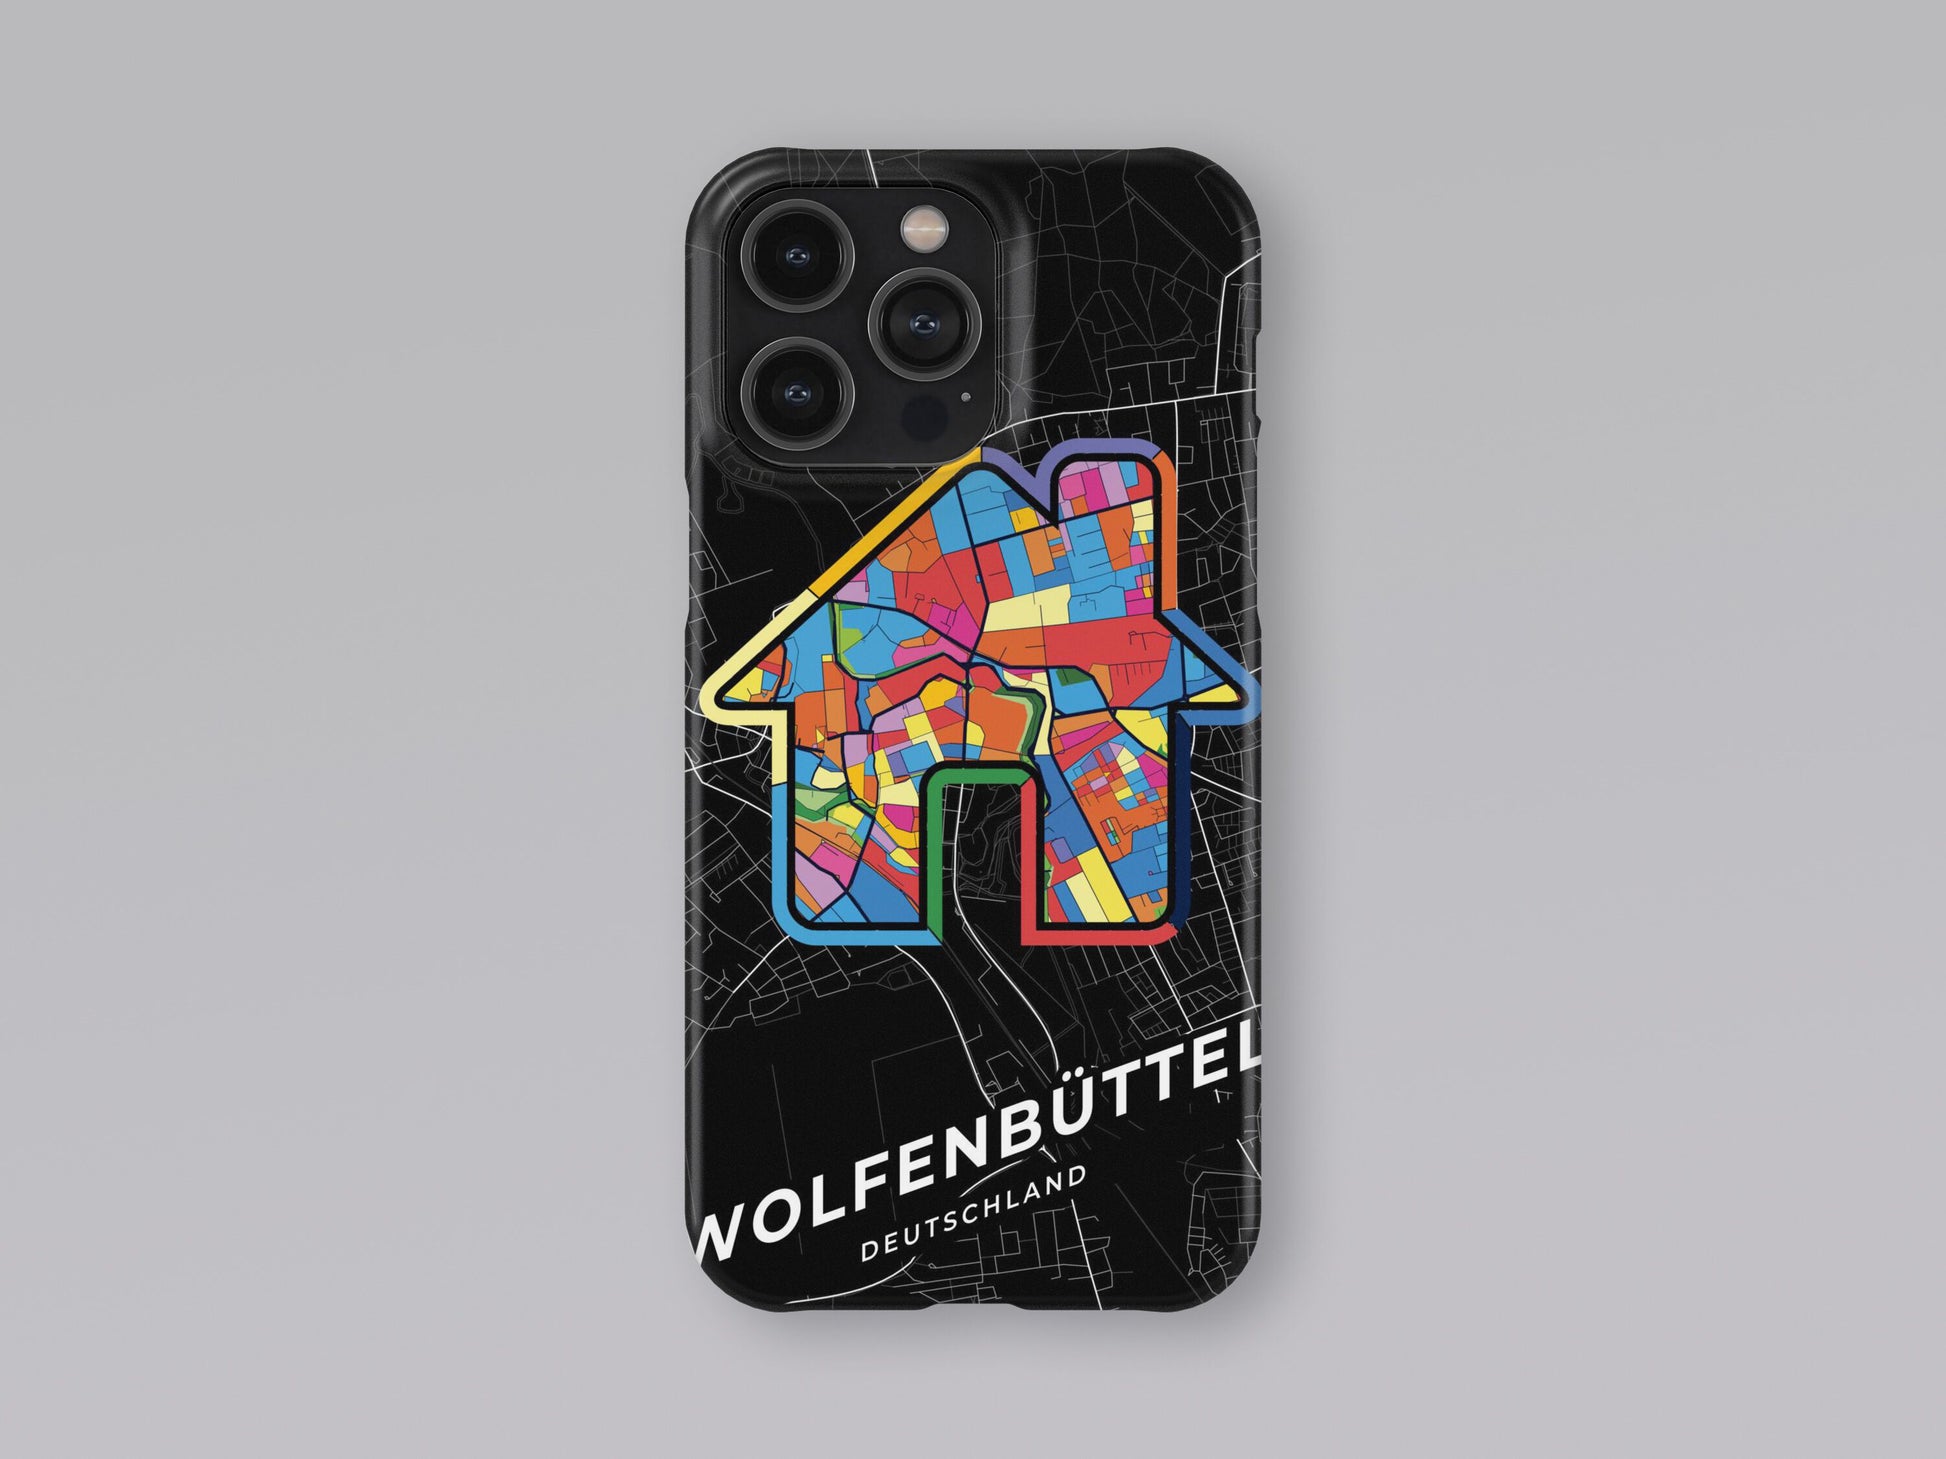 Wolfenbüttel Deutschland slim phone case with colorful icon 3